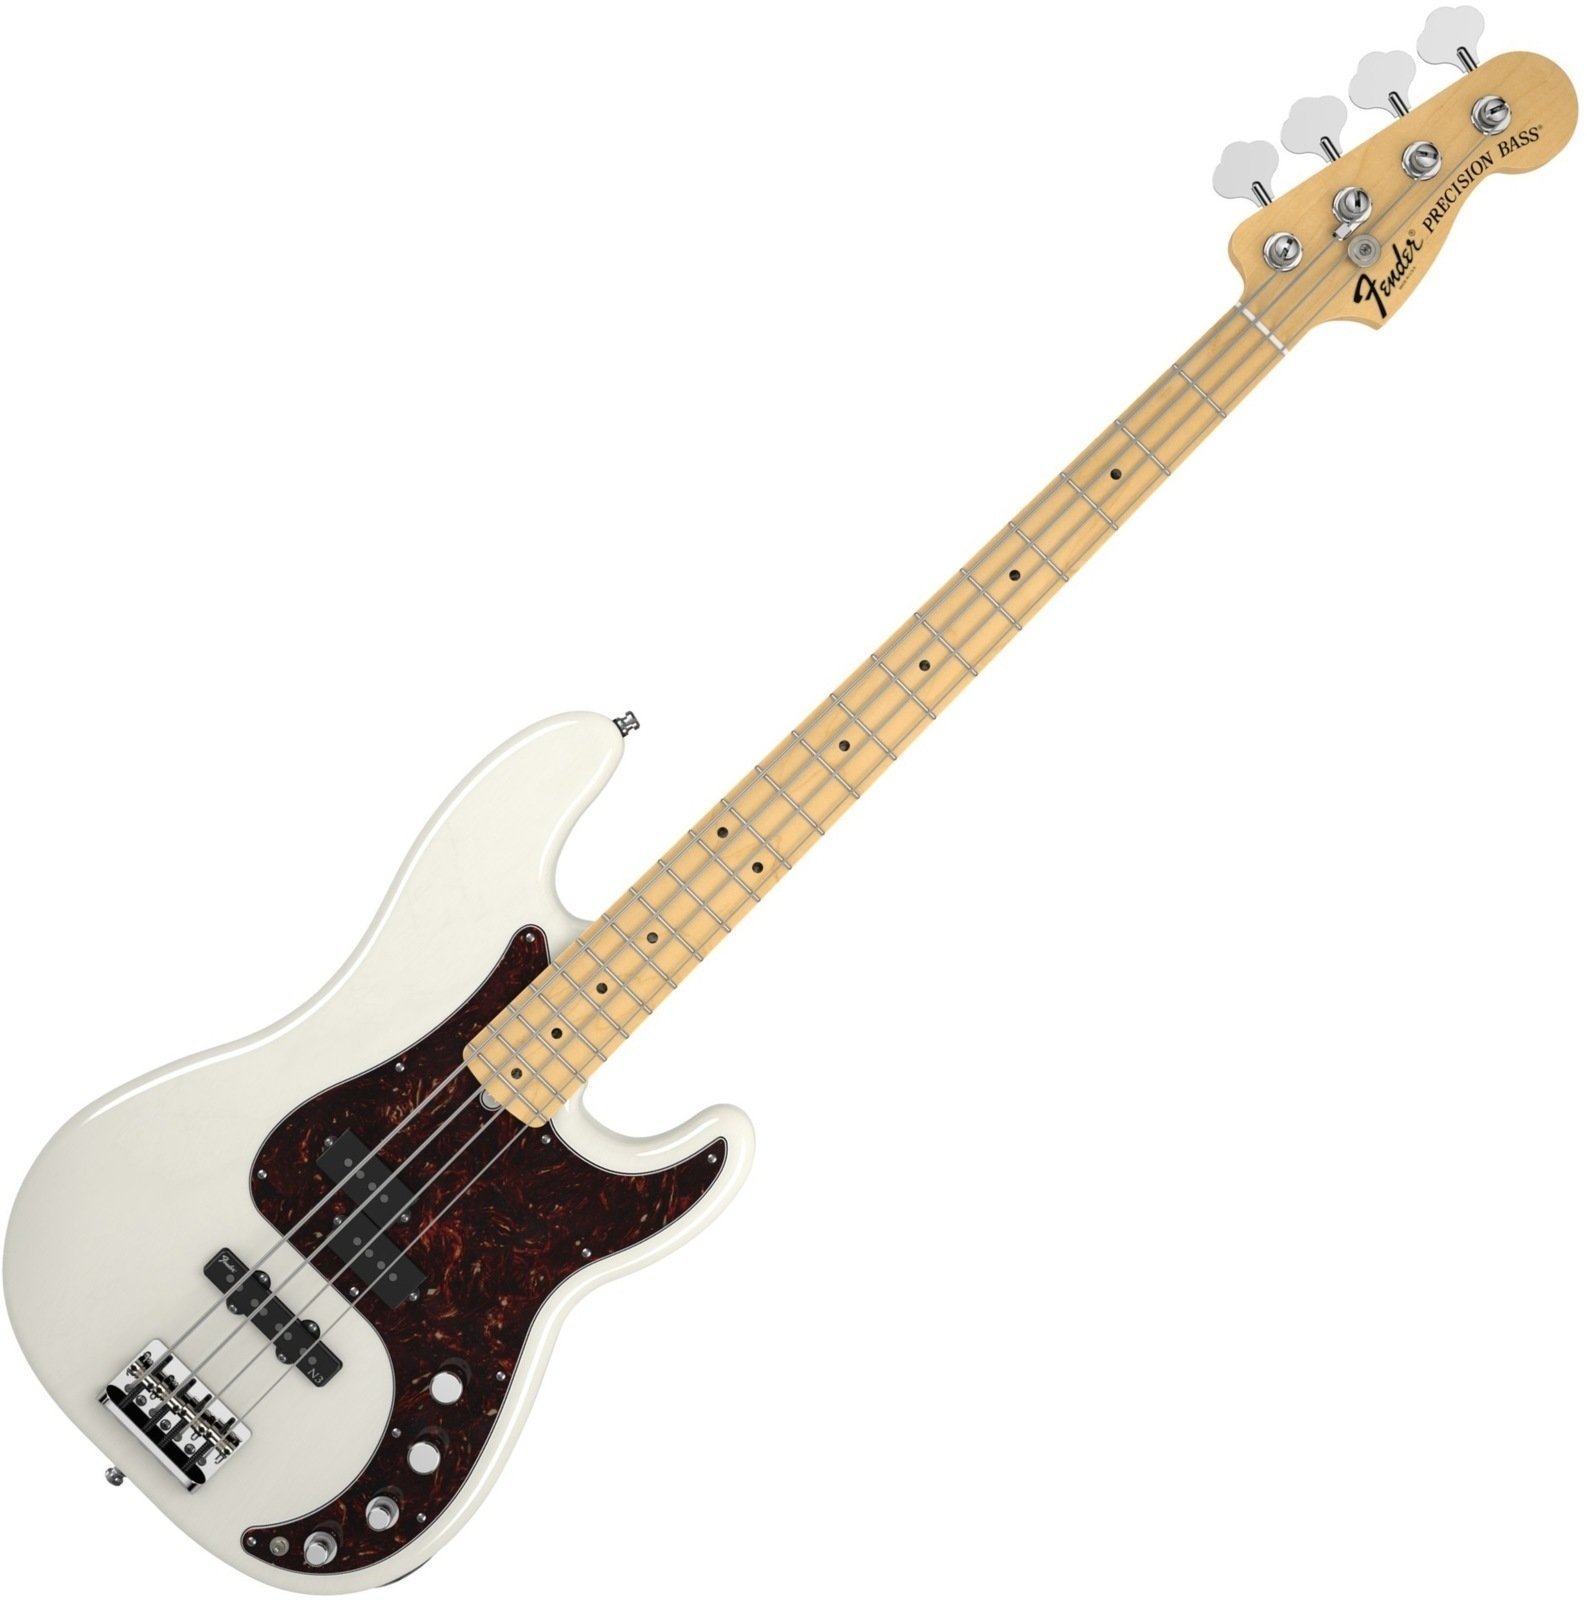 Basso Elettrico Fender American Deluxe Precision Bass Ash, Maple Fingerboard, White Blonde